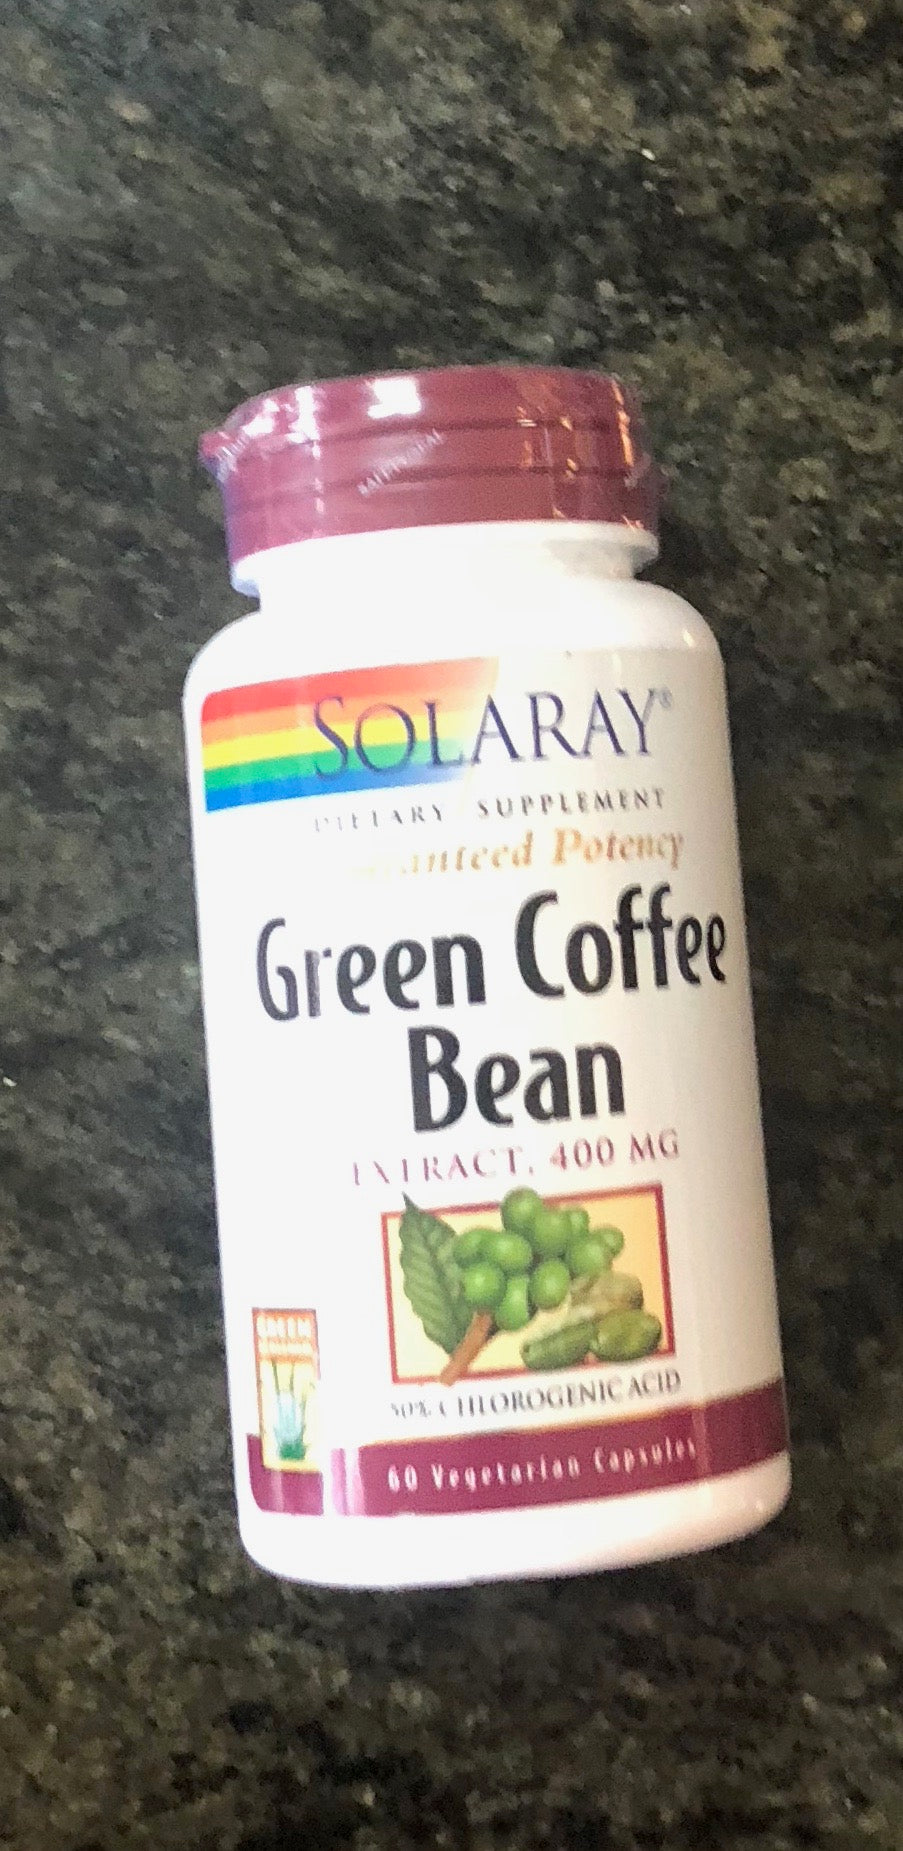 Solaray Green Coffee Bean Extract